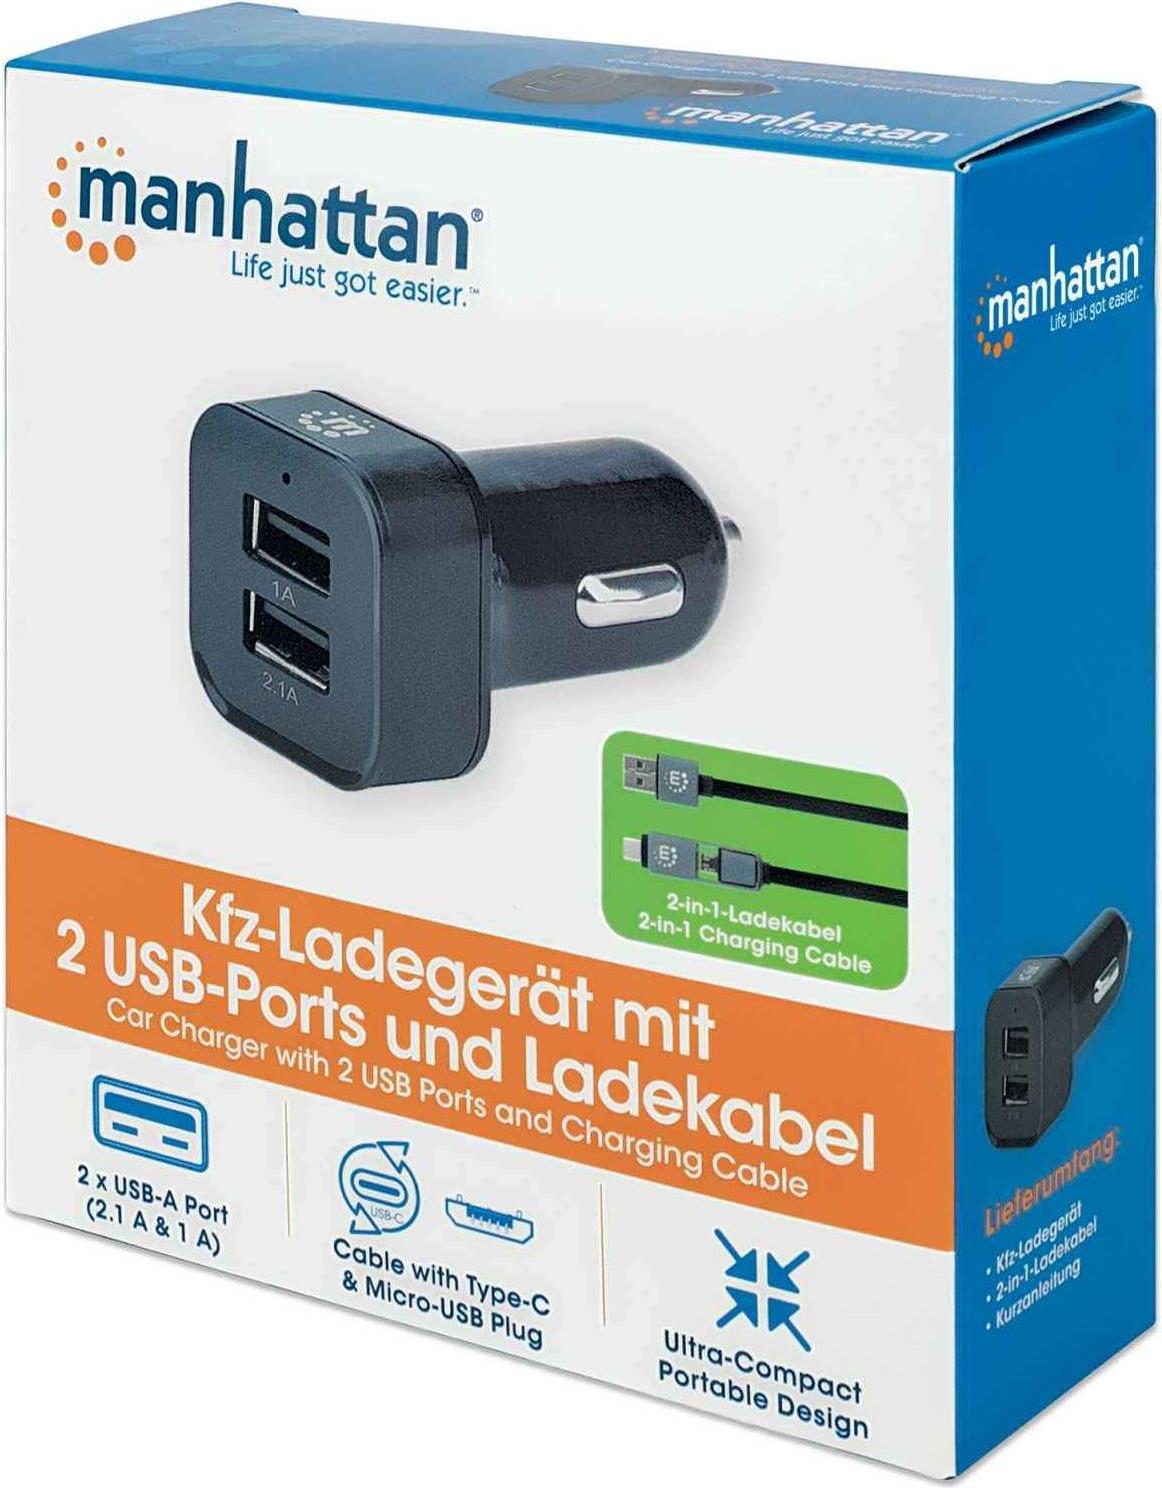 MANHATTAN Kfz-Ladegerät mit 2 USB-Ports und Ladekabel